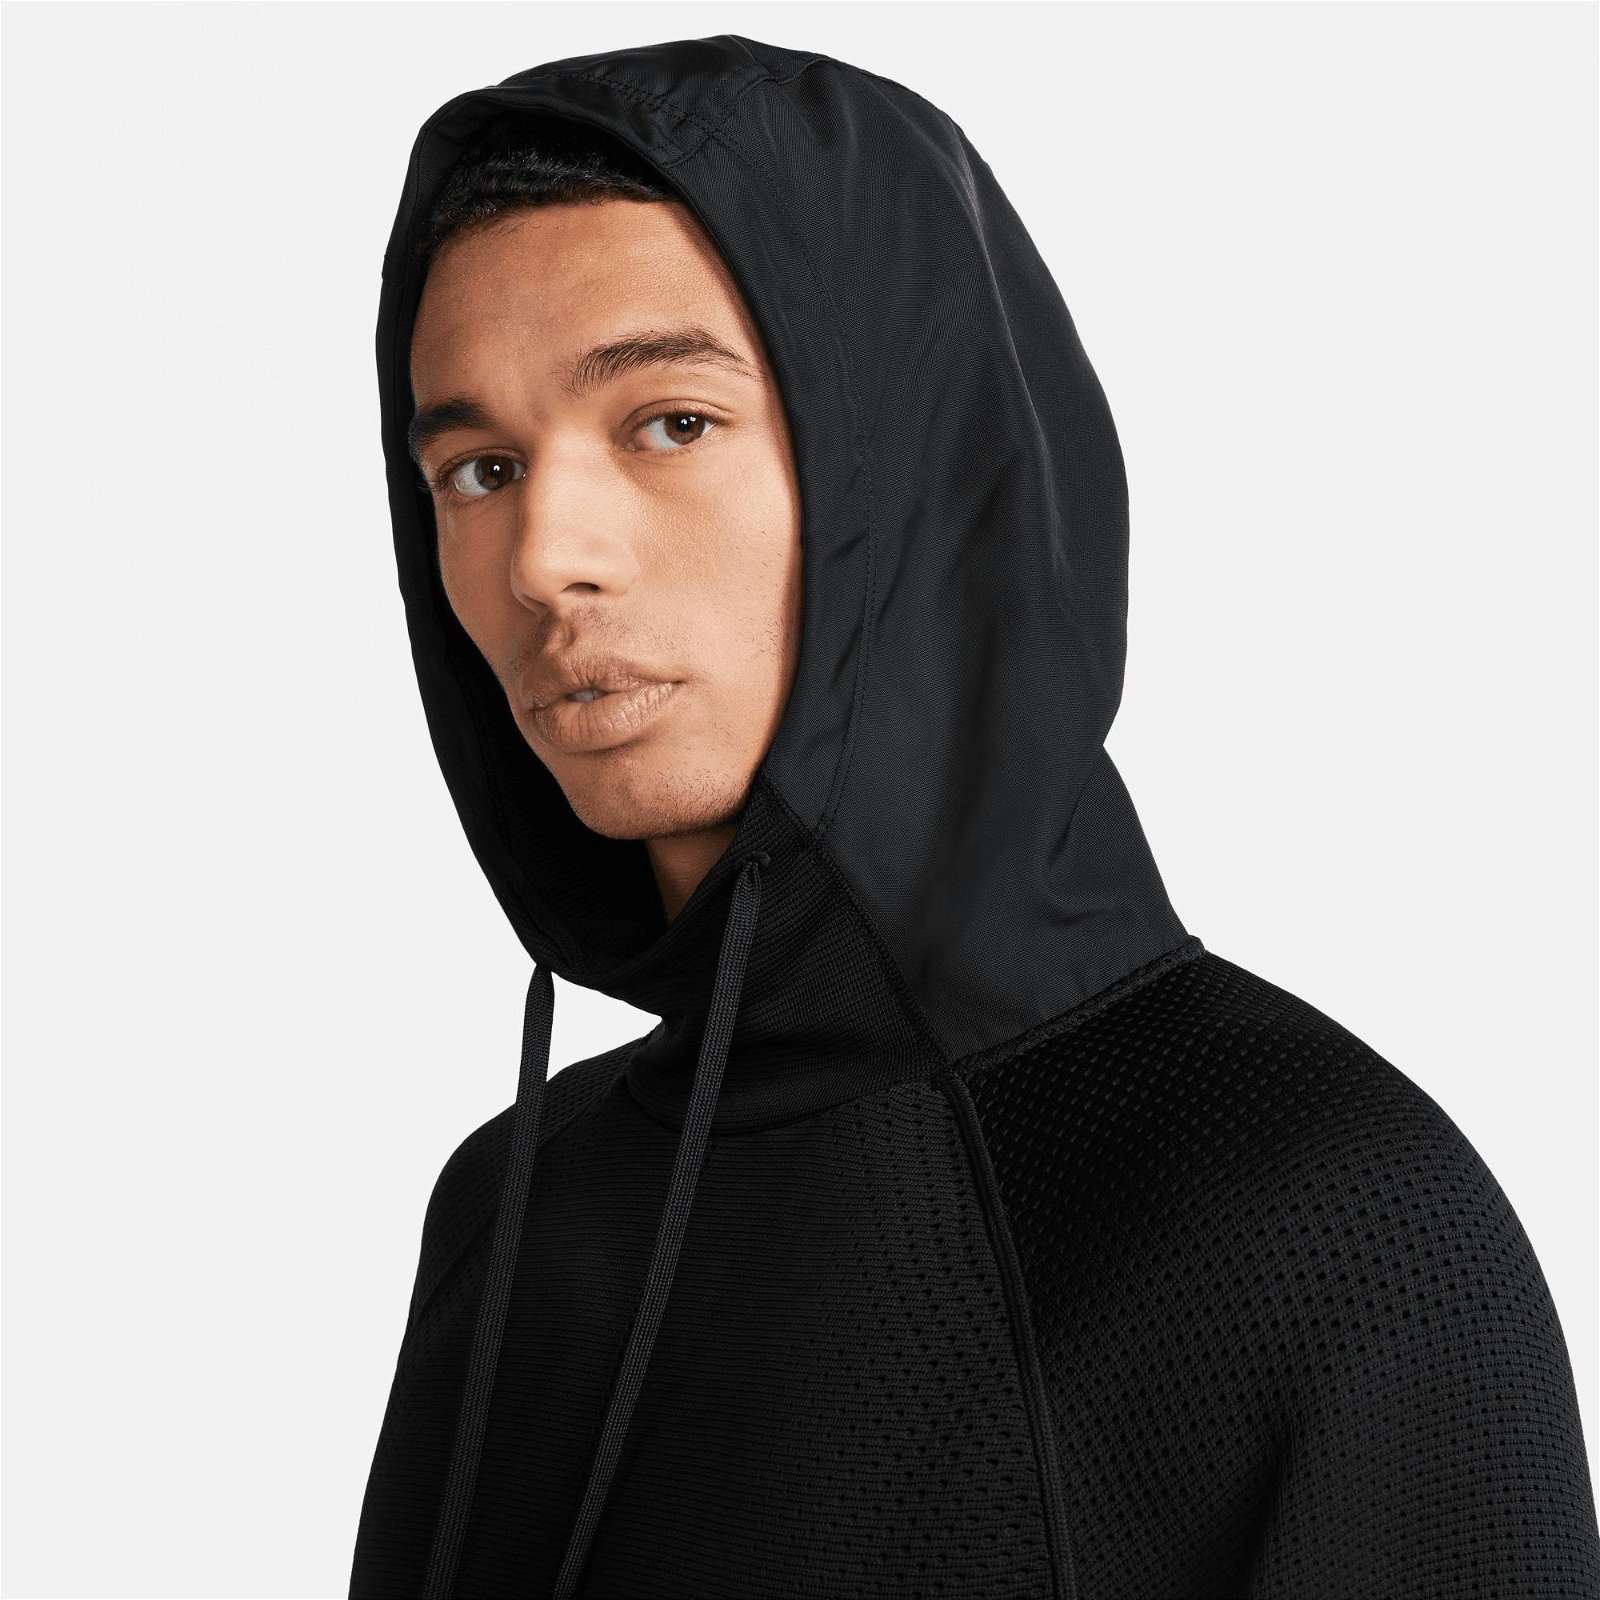 Nike Therma-FIT Adventure Axis Fleece Hoodie Erkek Siyah Sweatshirt